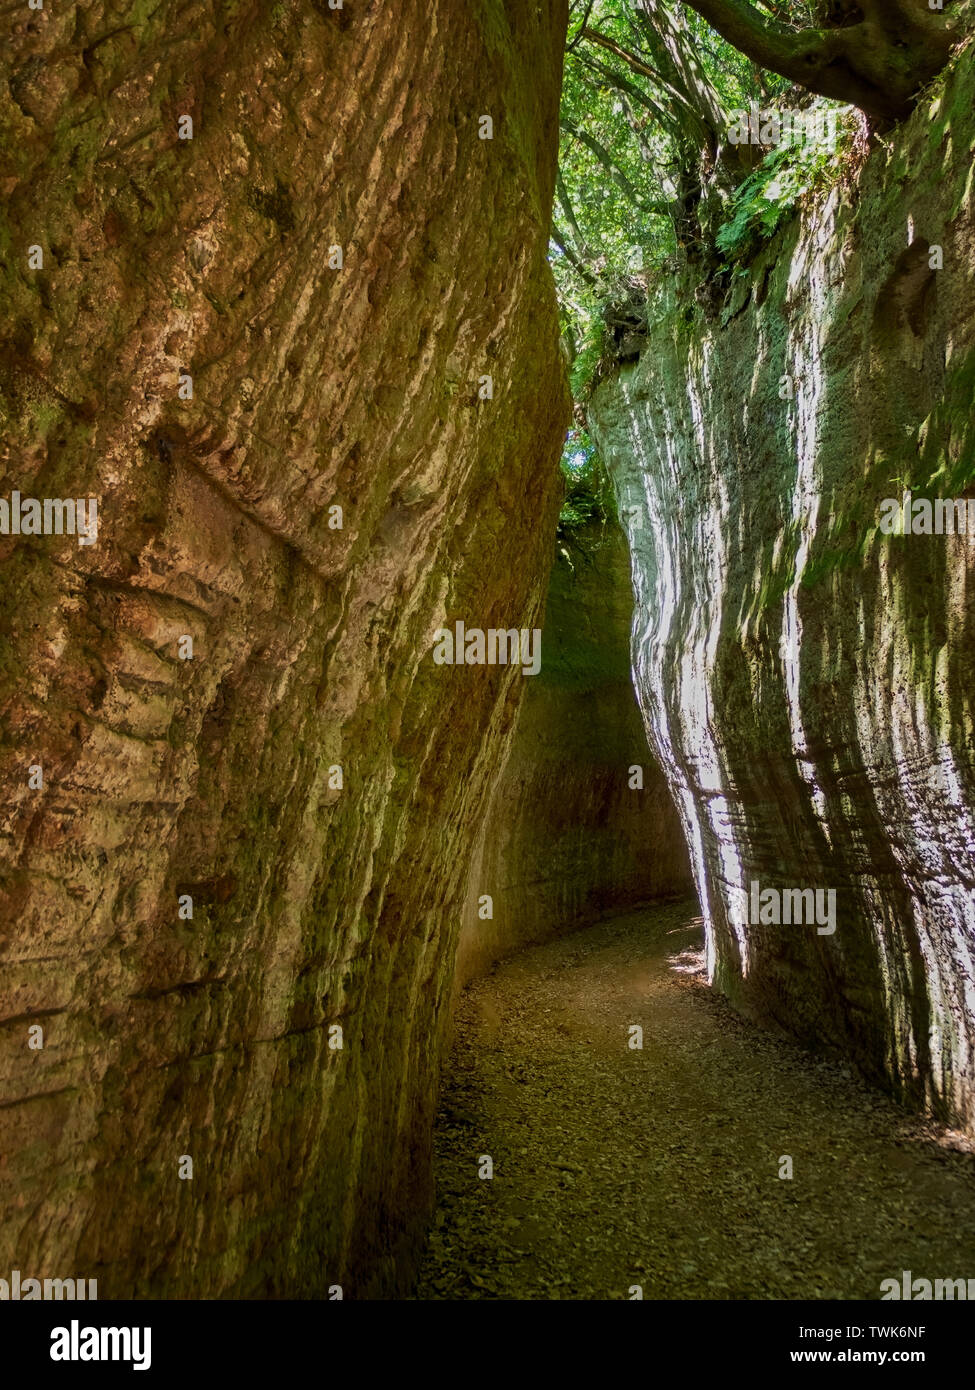 SOVANA, Toskana, Italien - 16. Juni 2019 über Cava, Höhle ie tiefen Schnitt ausgegraben Straßen, die von der etruskischen Zivilisation durch Tuffstein erstellt, Sovana in Stockfoto